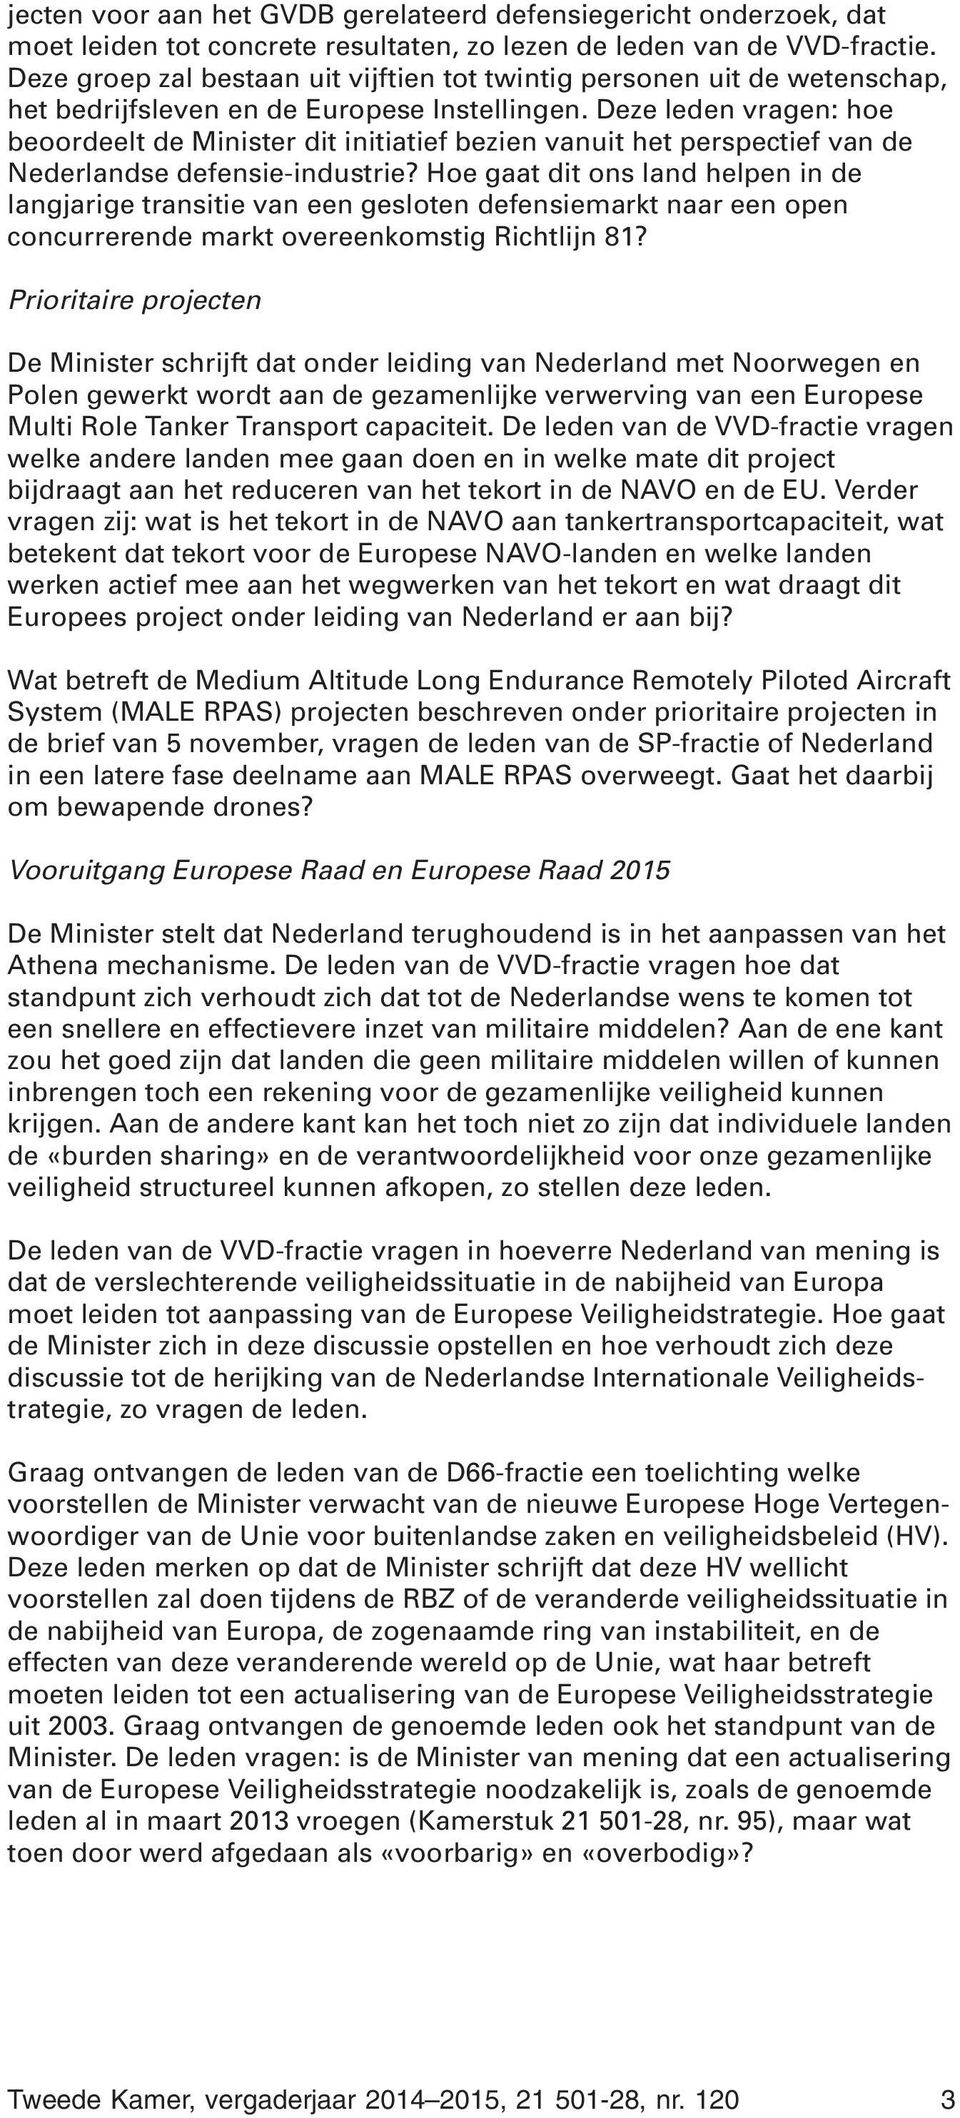 Deze leden vragen: hoe beoordeelt de Minister dit initiatief bezien vanuit het perspectief van de Nederlandse defensie-industrie?